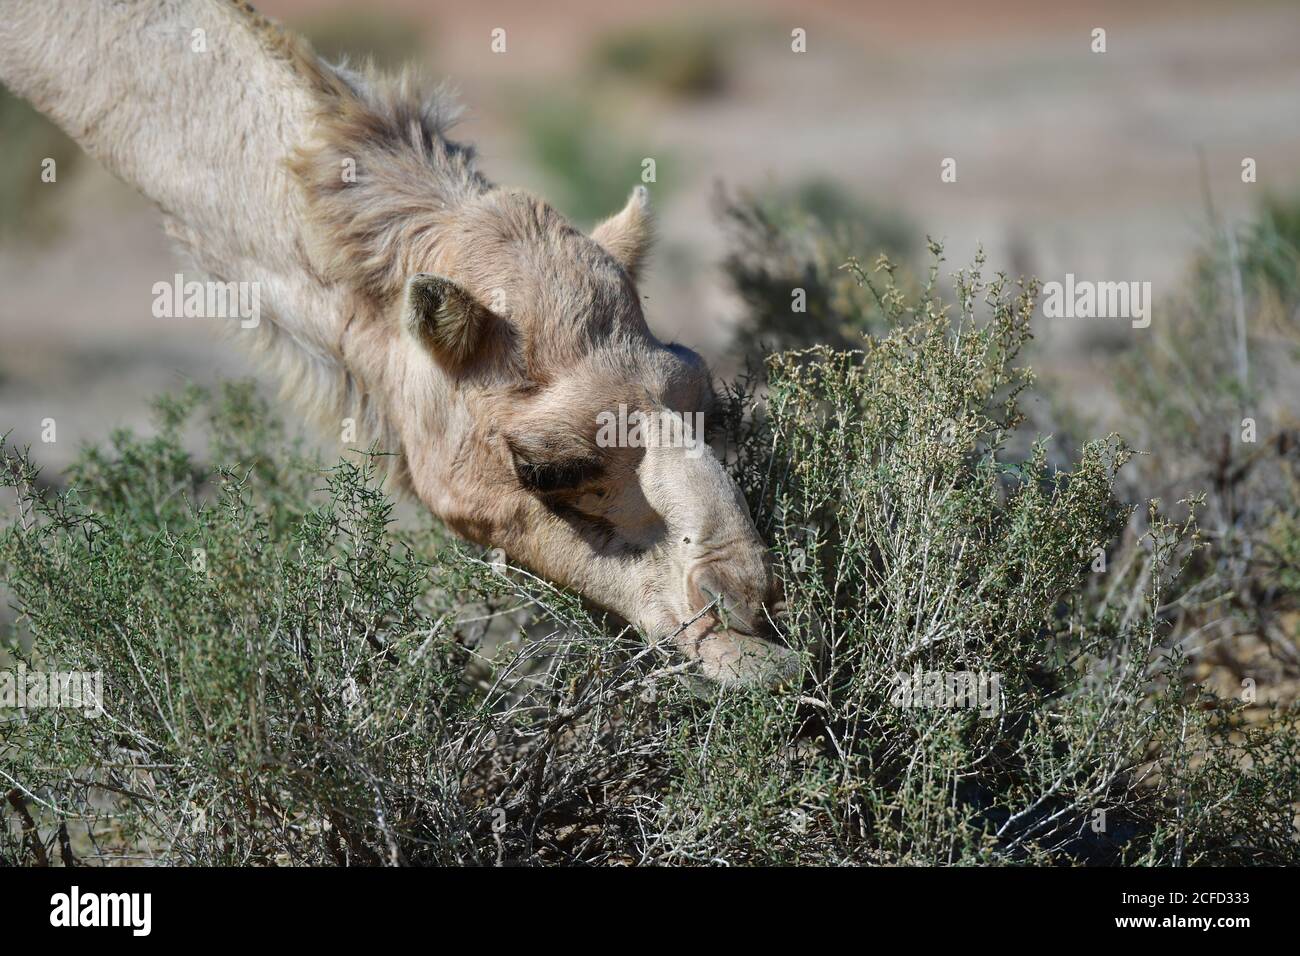 Arabisches Kamel (Dromedar), das Strauchpflanzen frisst und ihre Überlebensfähigkeiten in den Wüstenlandschaften der Landschaft der Arabischen Halbinsel ausstellt. Stockfoto